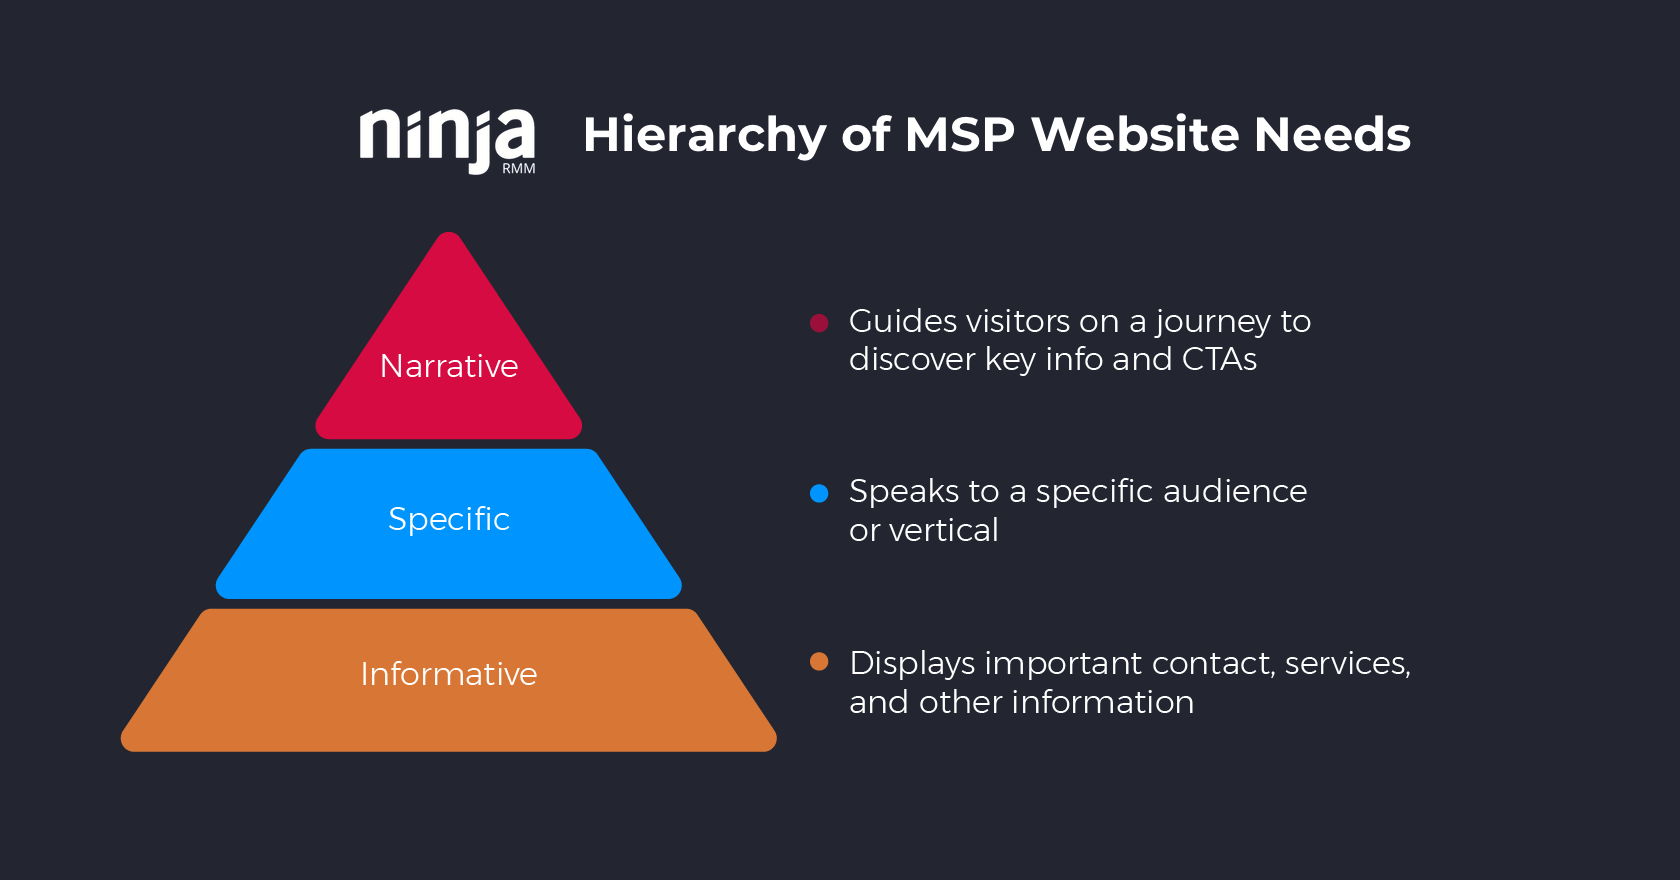 gerarchia delle necessità dei siti web per MSP